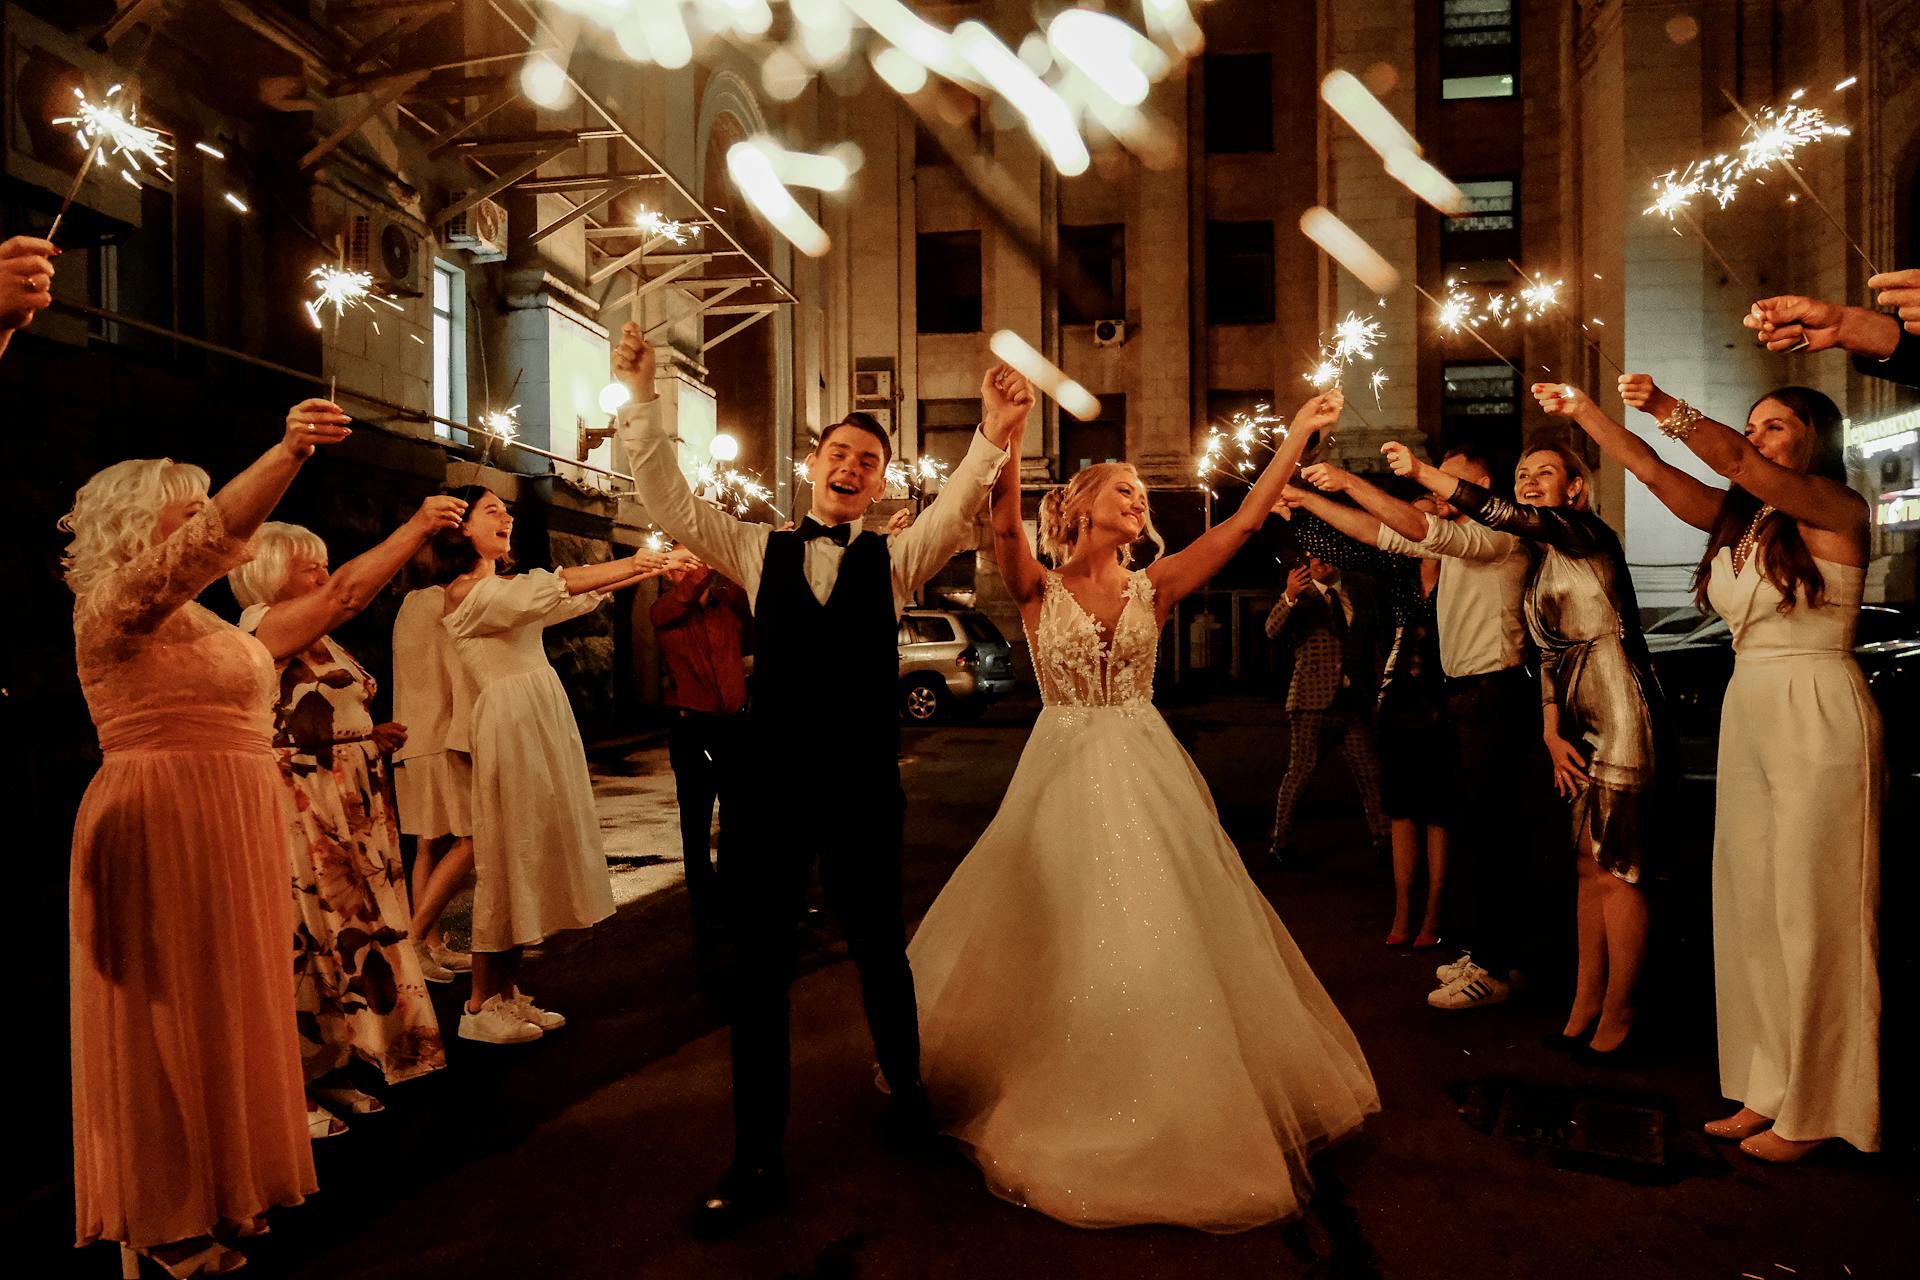 Des amis heureux et un couple de jeunes mariés fêtant leur mariage la nuit | Source : Pexels